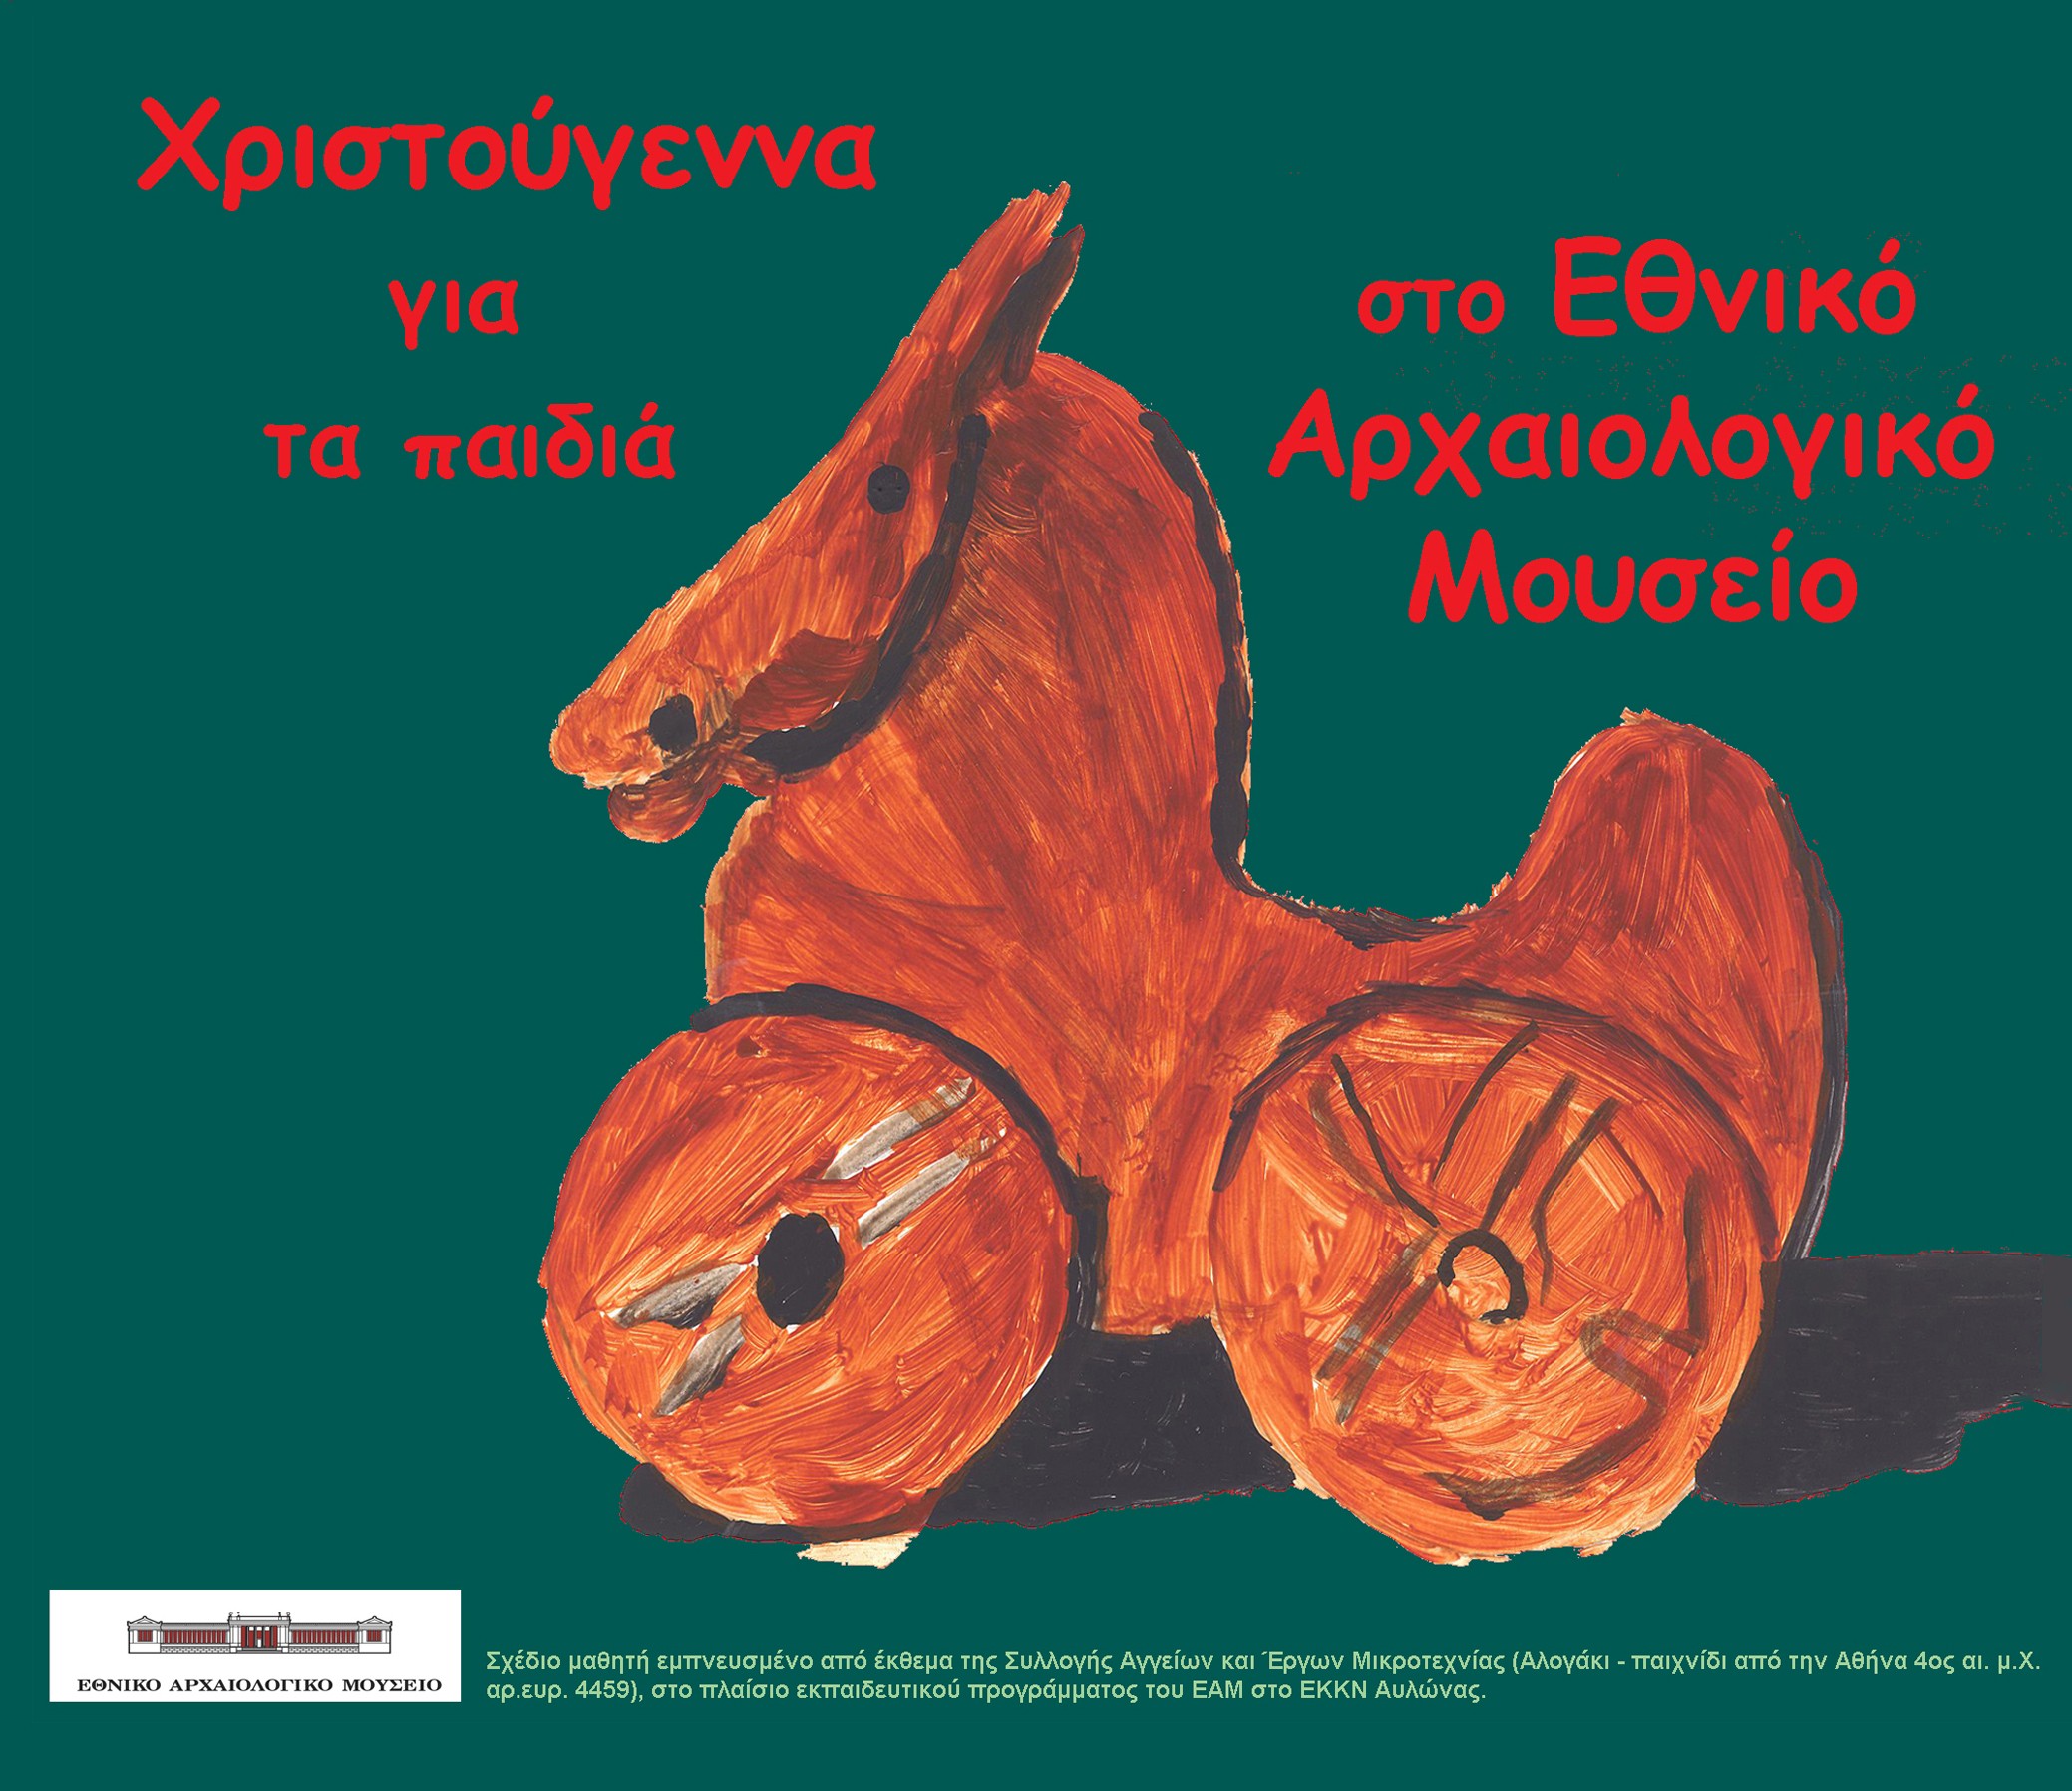 Αφίσα με θέμα το χριστουγεννιάτικο εκπαιδευτικό πρόγραμμα «Παίζοντας με τον τρόπο των αρχαίων» (© TAΠΑ/Εθνικό Αρχαιολογικό Μουσείο).